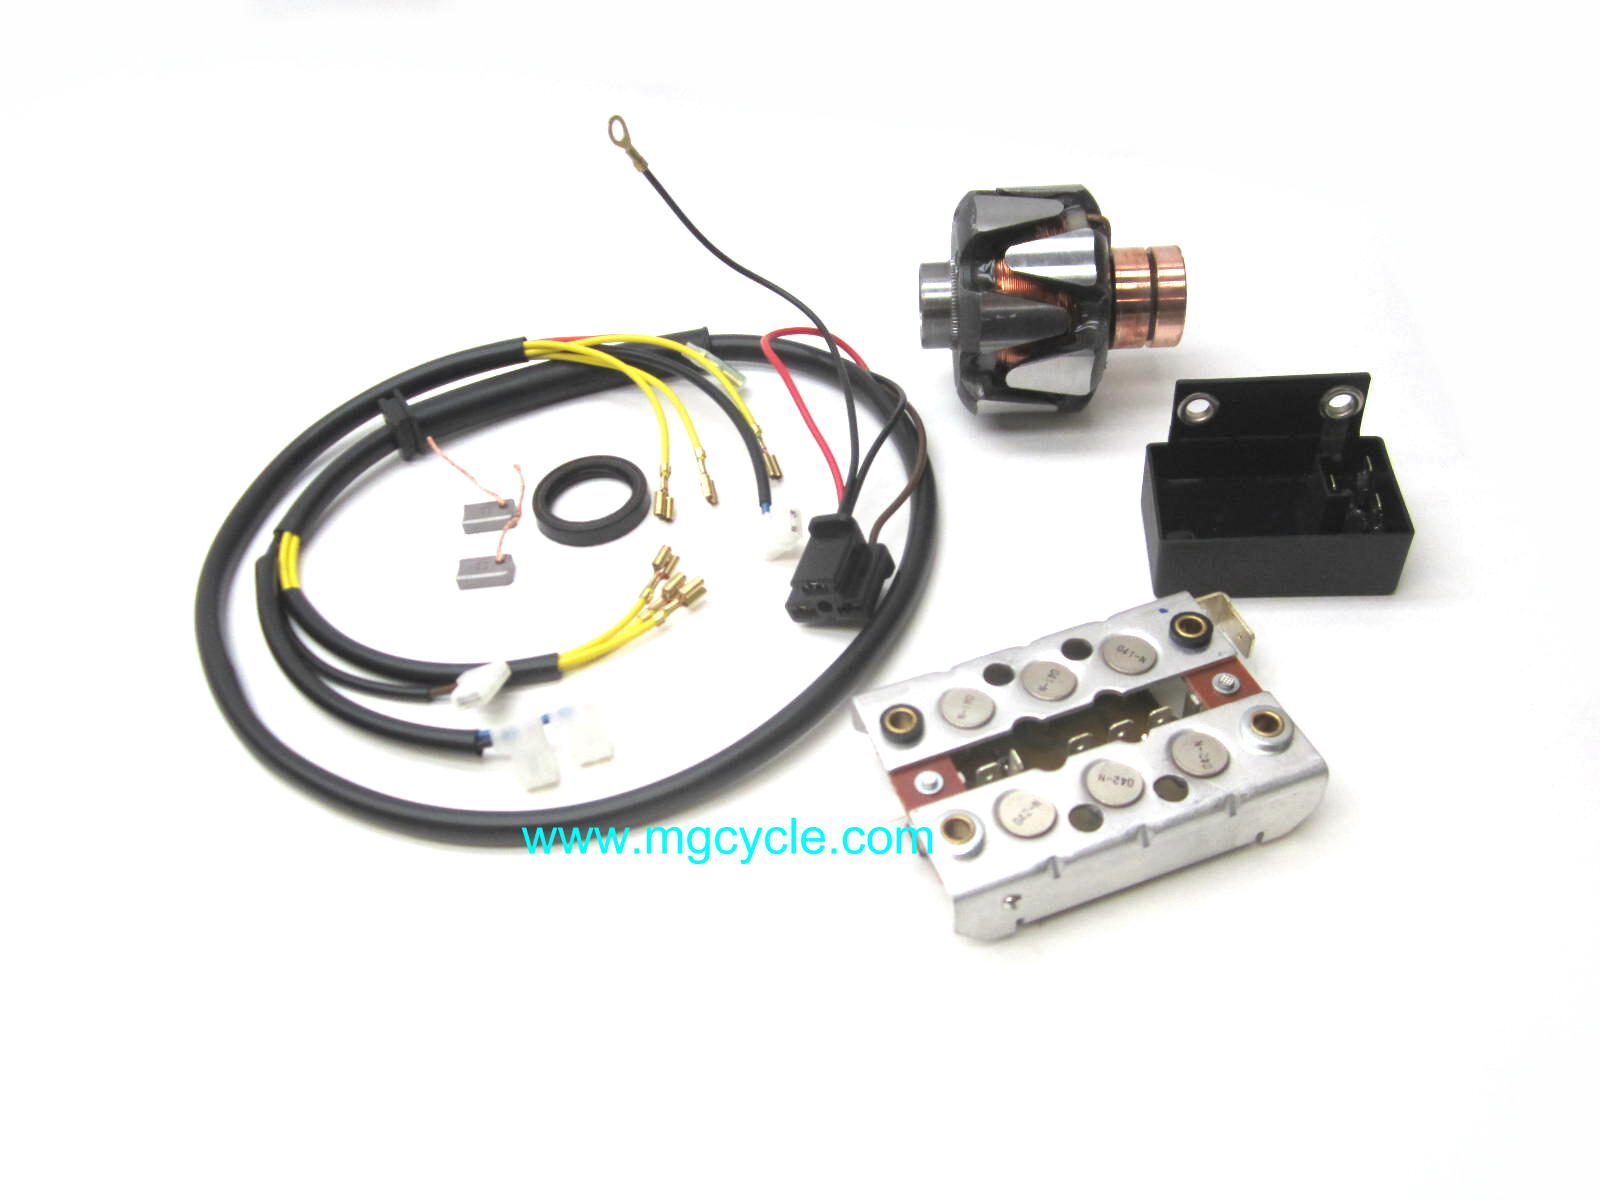 Charging system kit, 280 watt Bosch systems